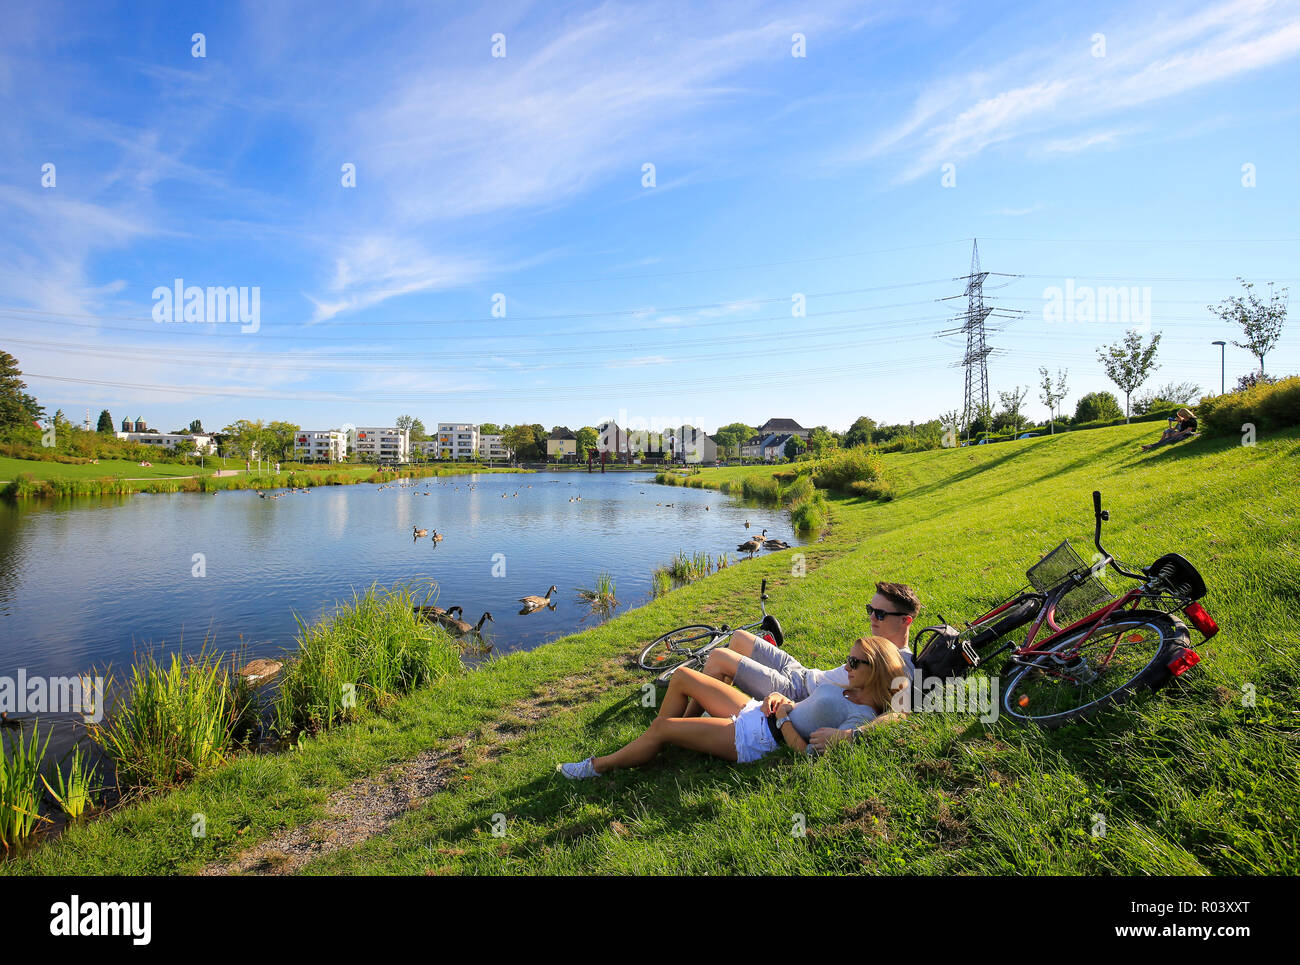 Essen, área de Ruhr, Alemania, el proyecto de desarrollo urbano Niederfeldsee, joven pareja reside en la pradera Foto de stock